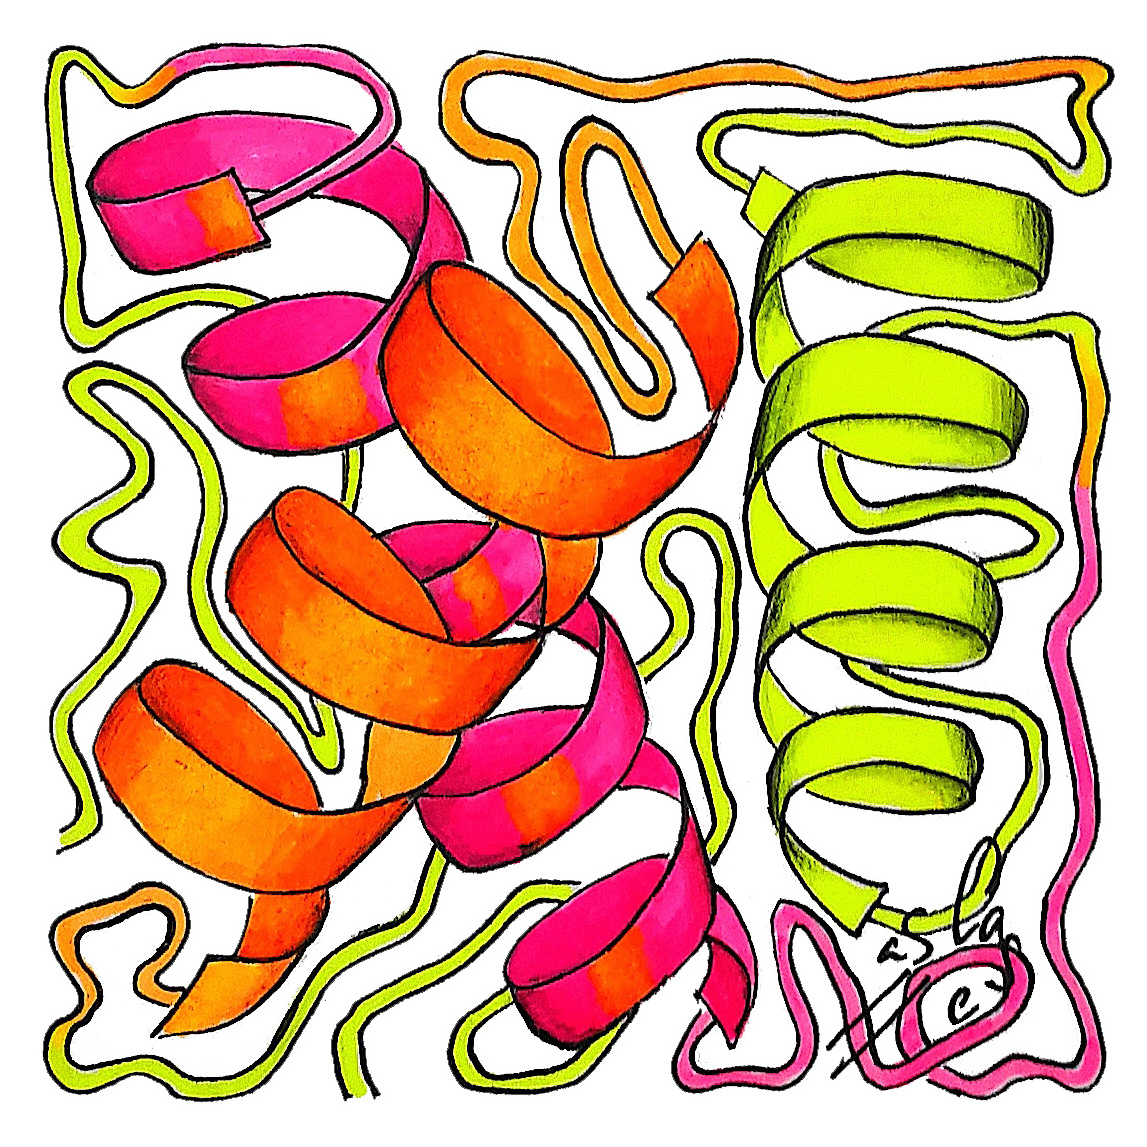 Proteína serpentina, Vicky Casellas, Ilustración fluorescente